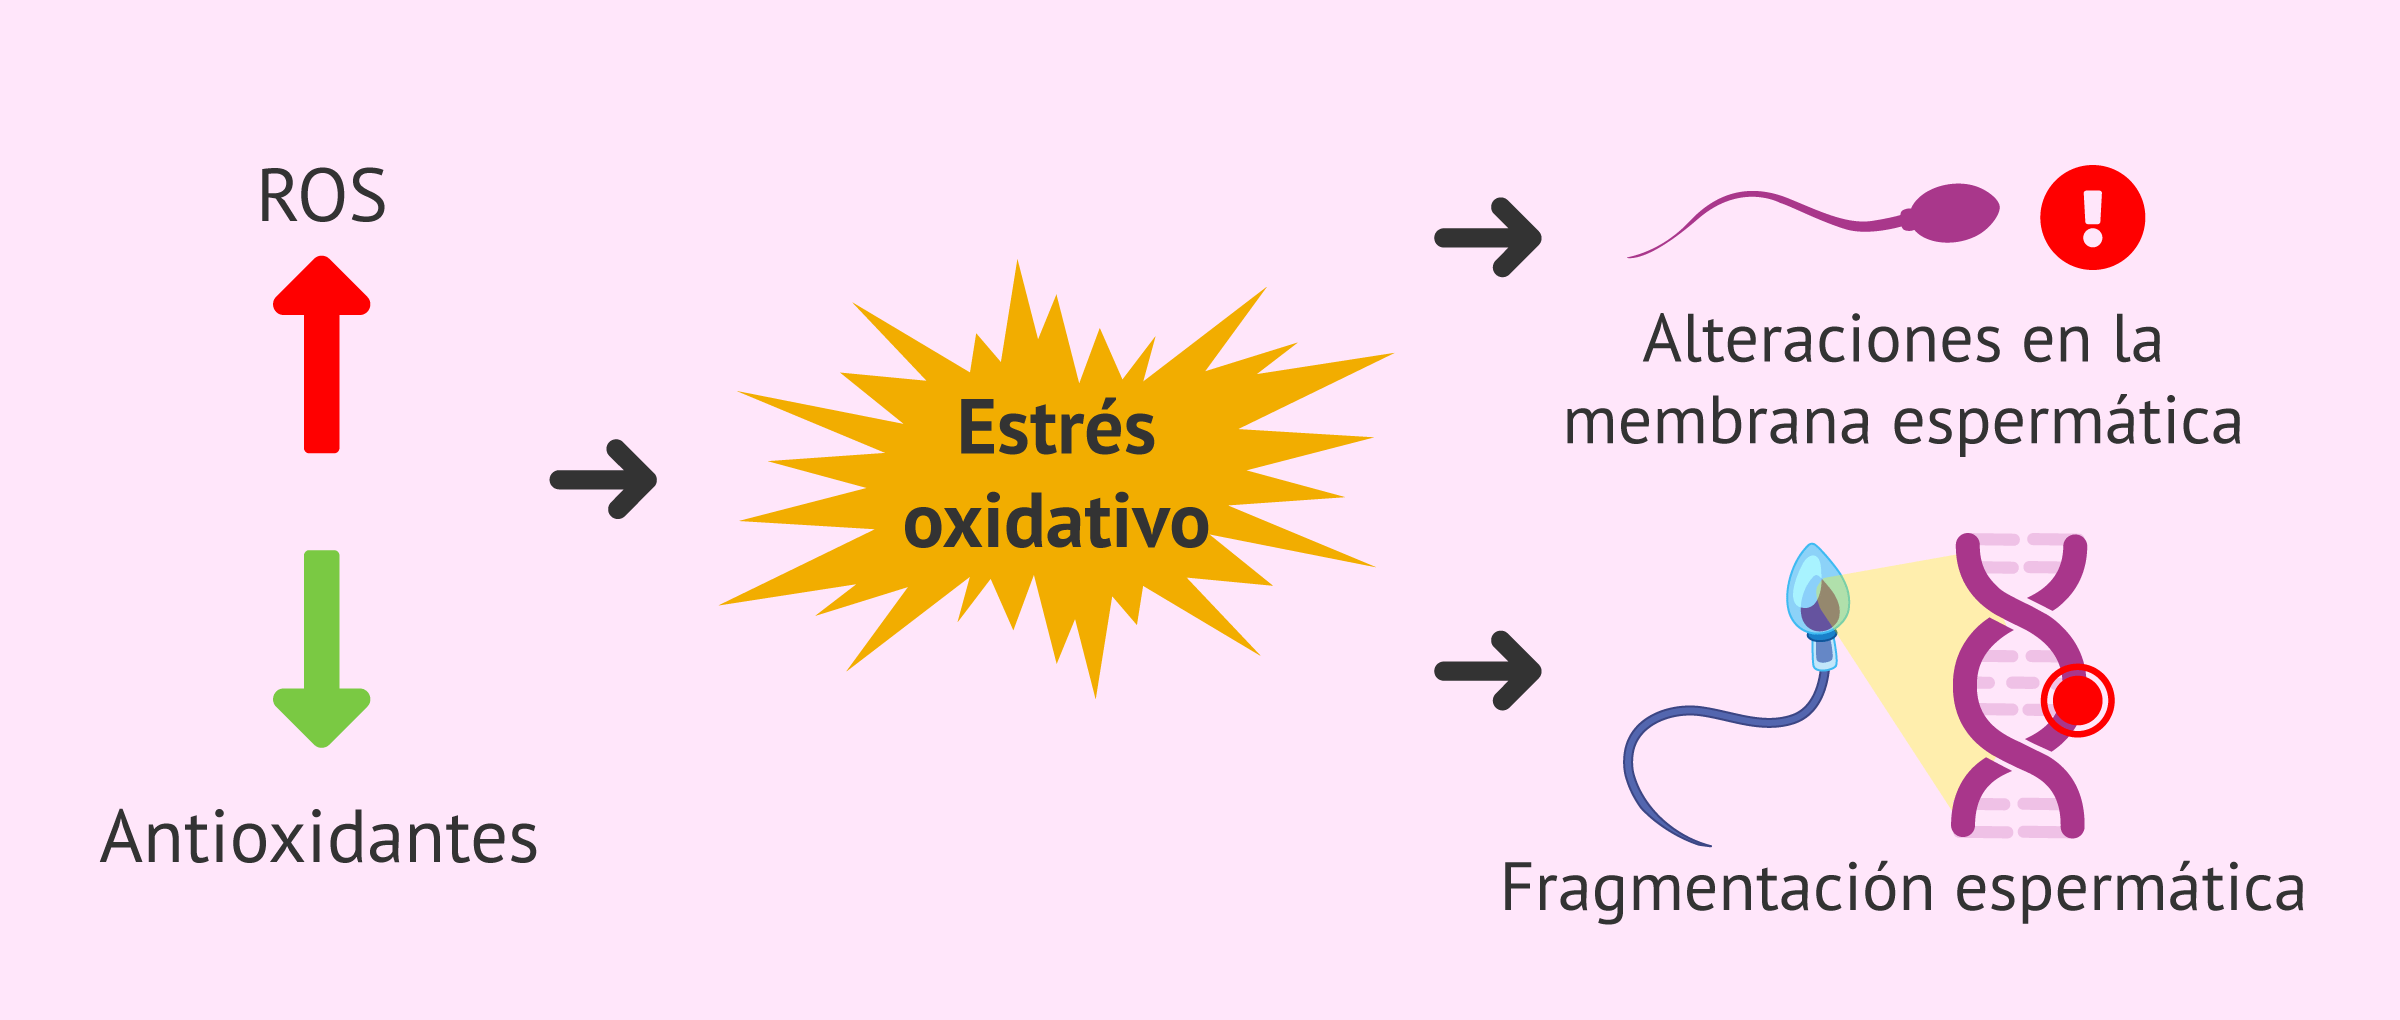 Estrés oxidativo y aborto recurrente